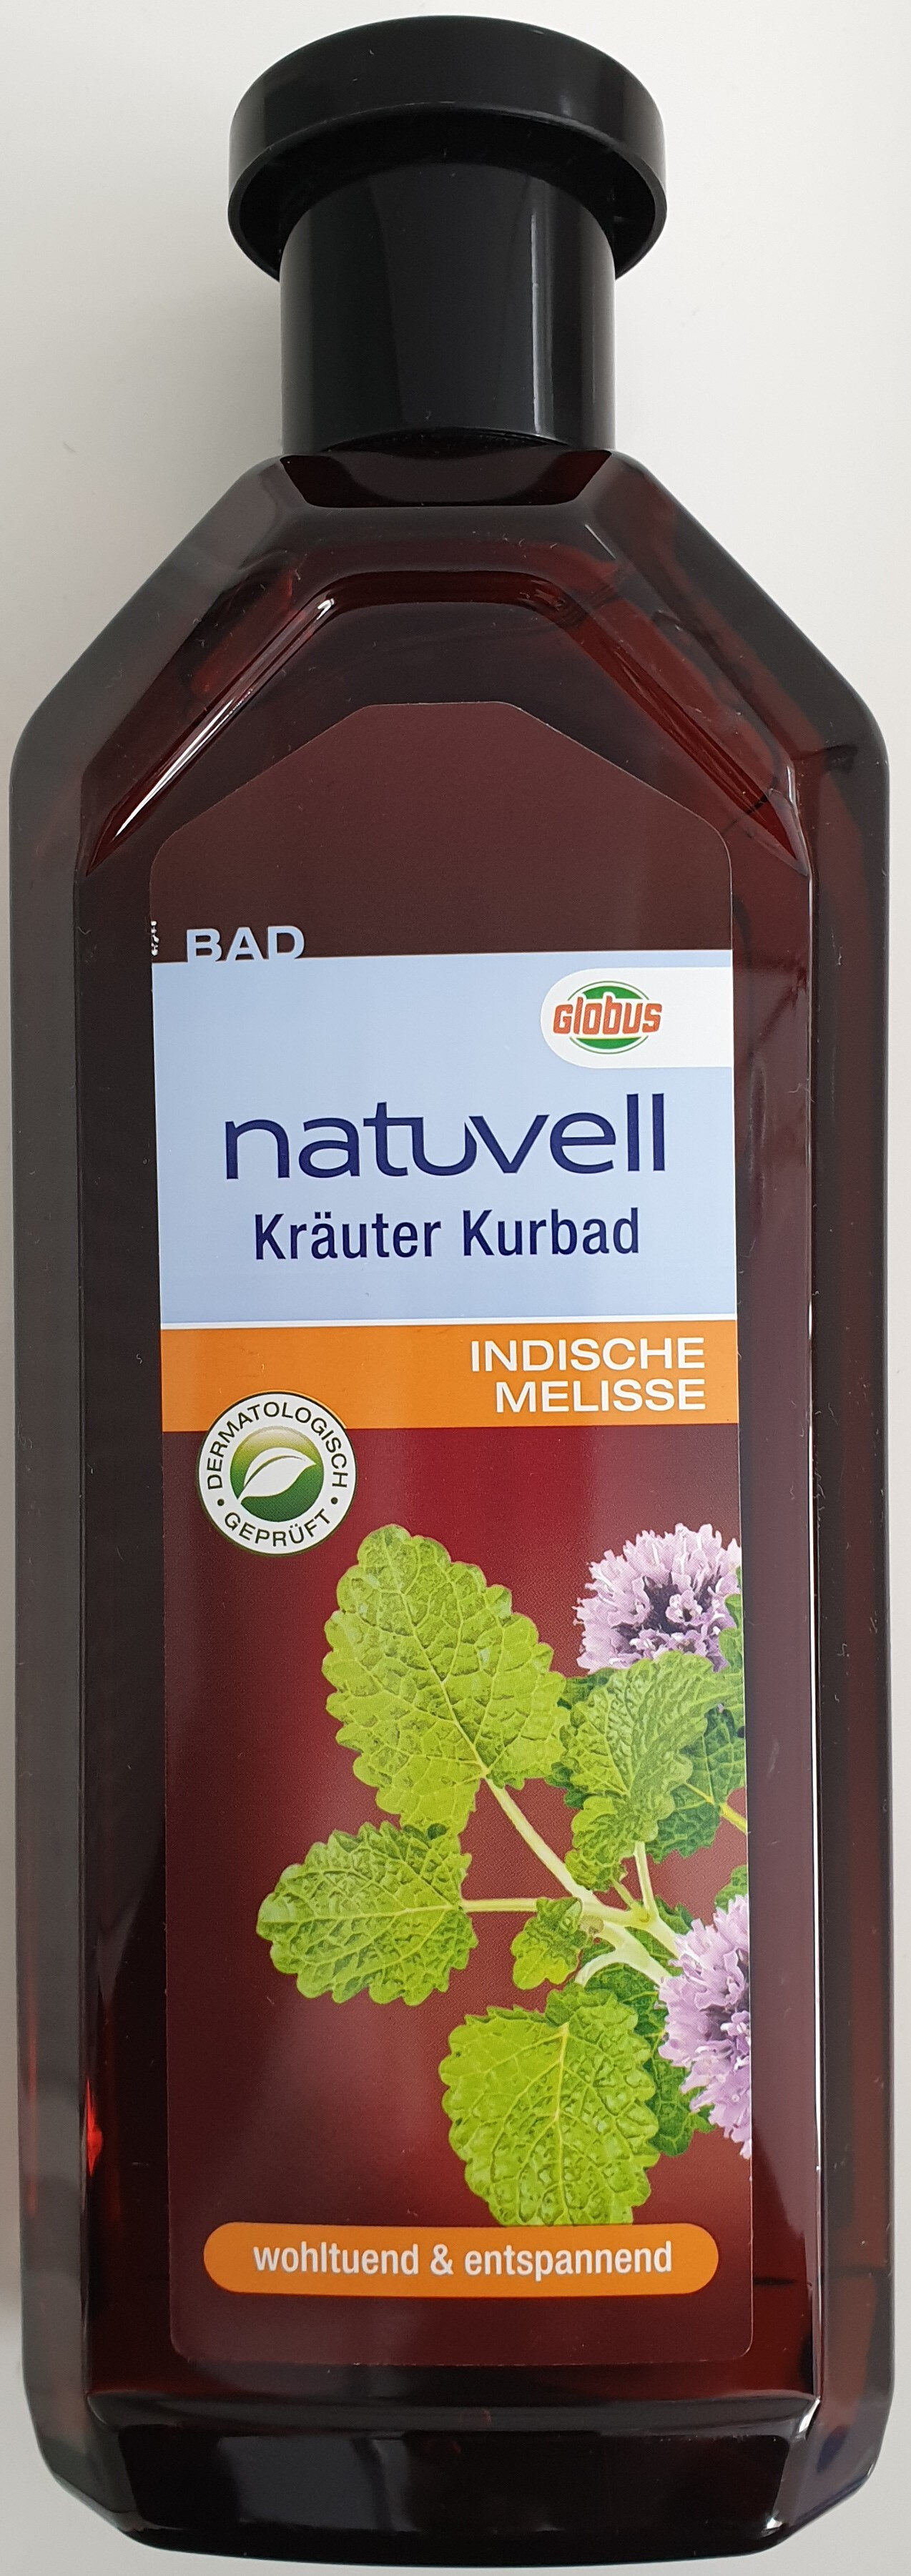 Kräuter Kurbad - Produit - de